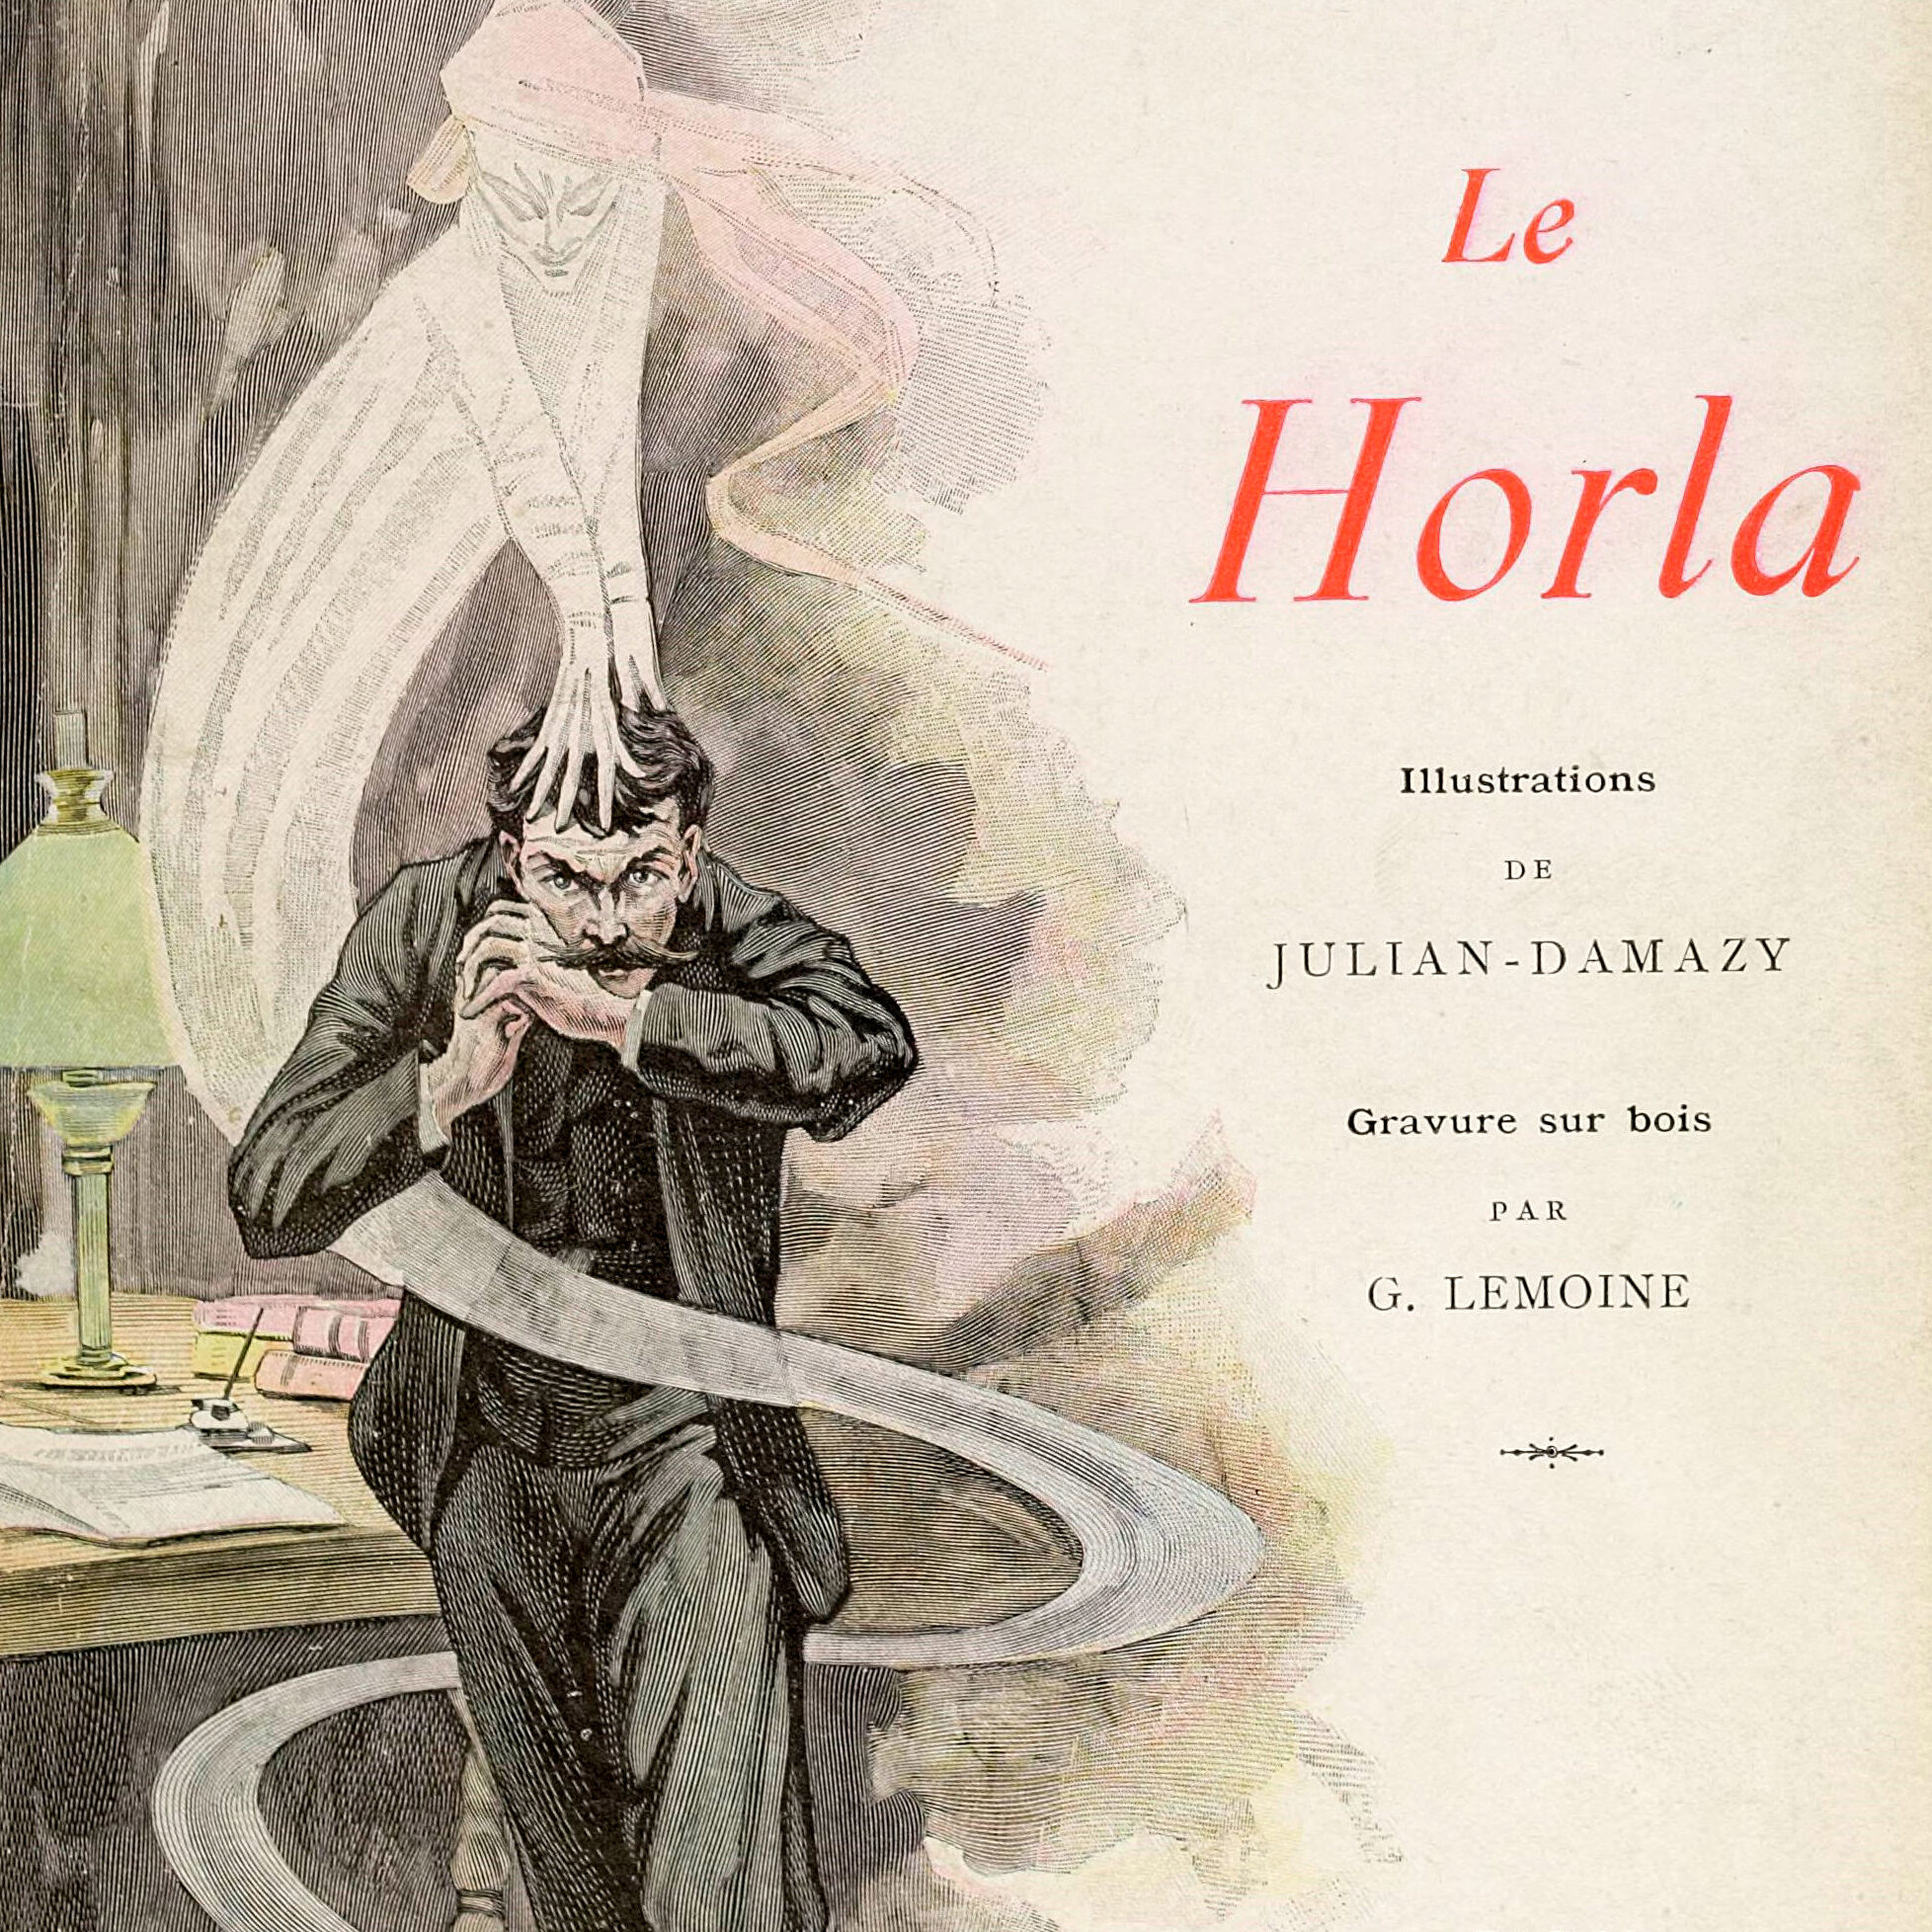 Le Horla - Couverture d'une édition de 1908 du recueil de Maupassant Le Horla, illustrée par des dessins de William Julian-Damazy (1865-1910). Gravure sur bois de Gorges Lemoine.